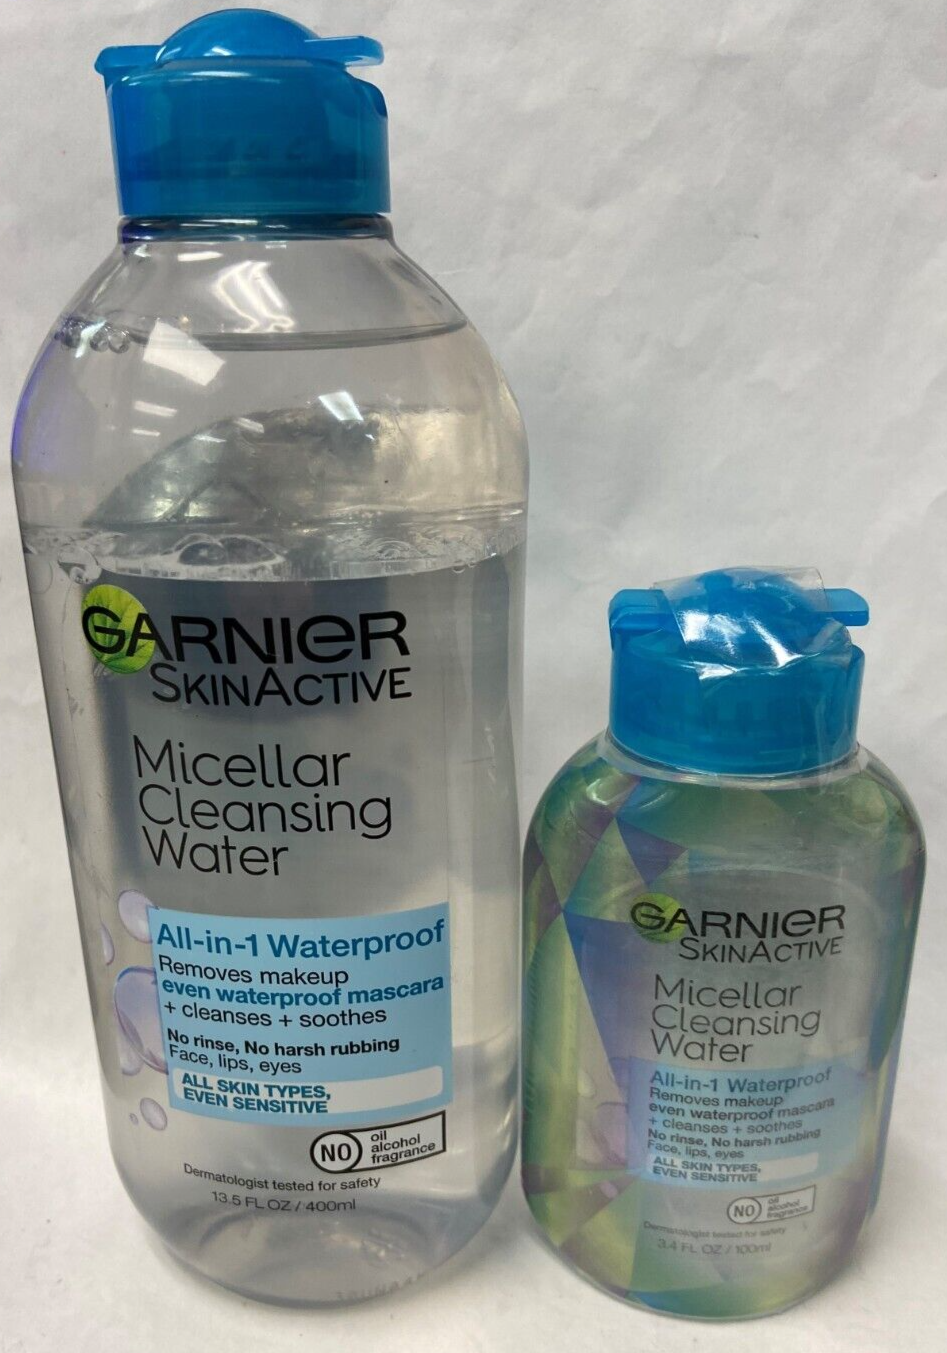 Garnier SkinActive Micellar Cleansing Water All in 1 Waterproof Makeup*Twin Pack - $14.99